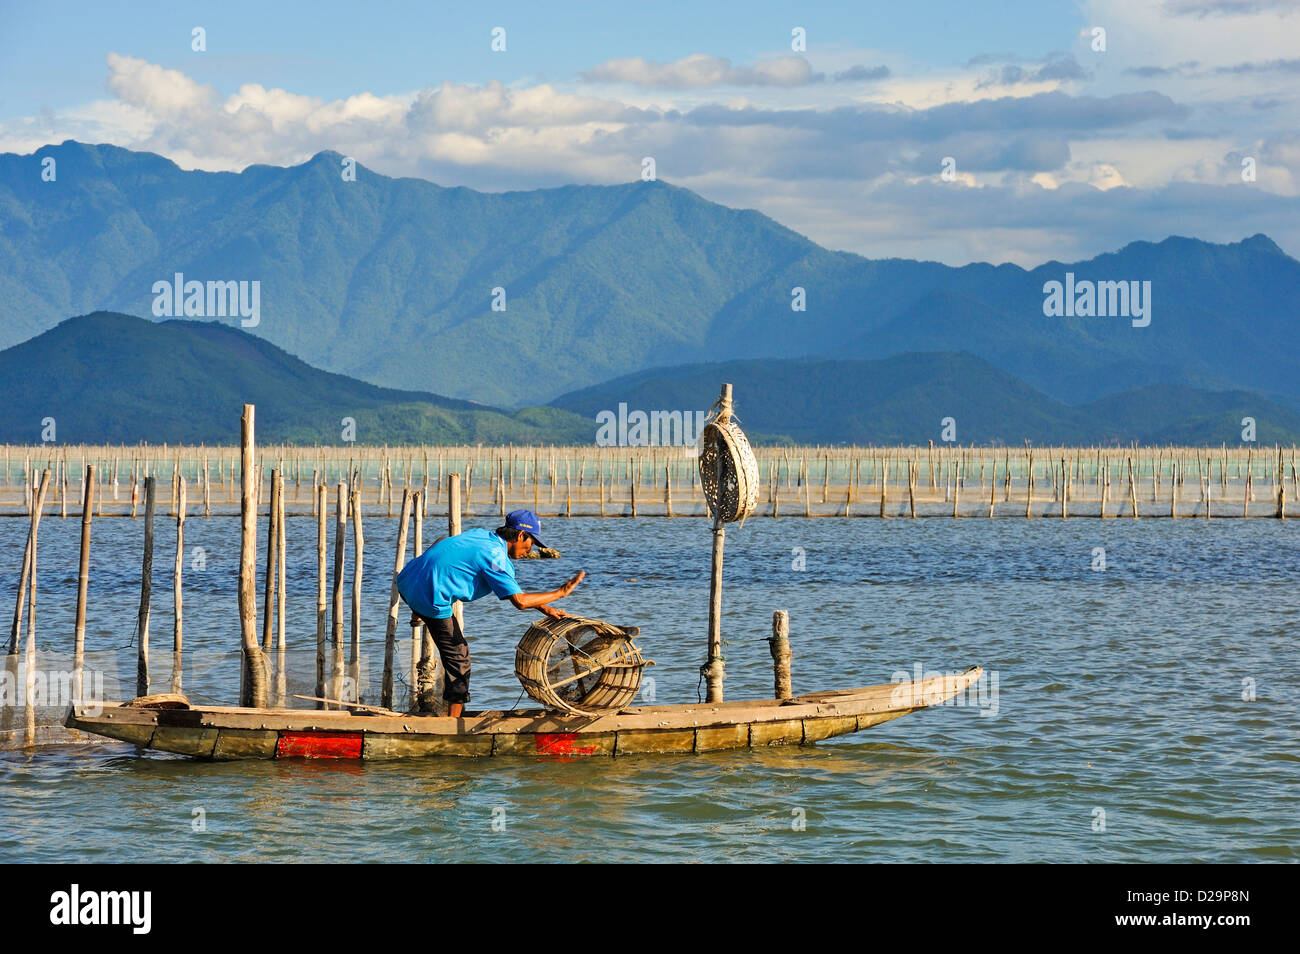 Phu Loc laguna, Vietnam - Fisherman avec piège de pêche Banque D'Images